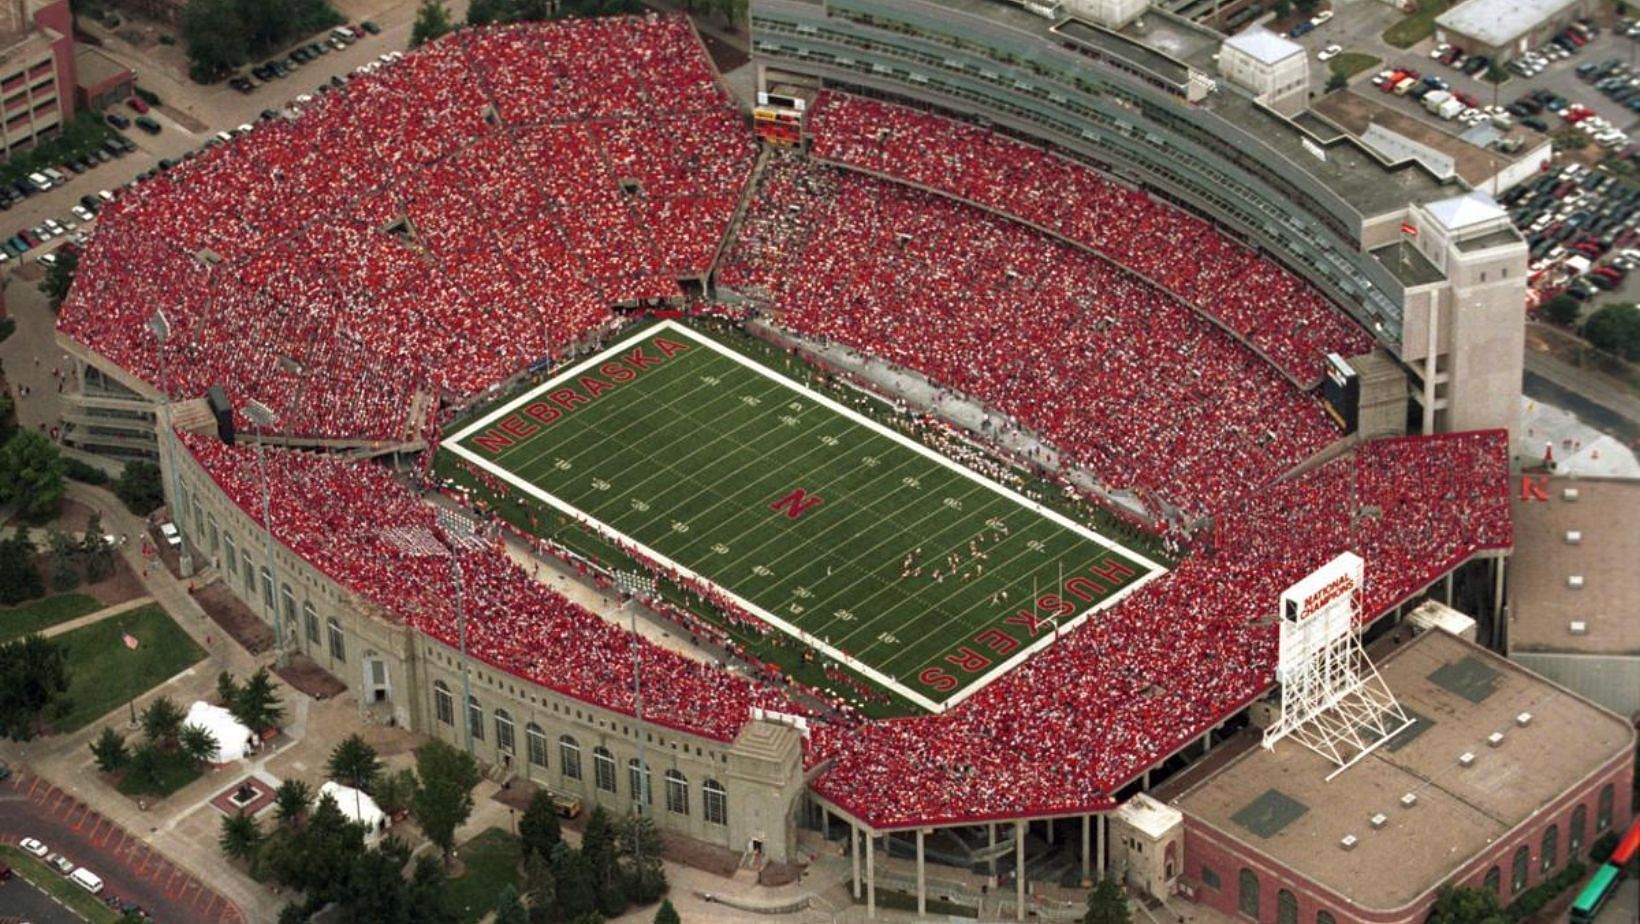 92,003 fans flock to Nebraska Memorial Stadium